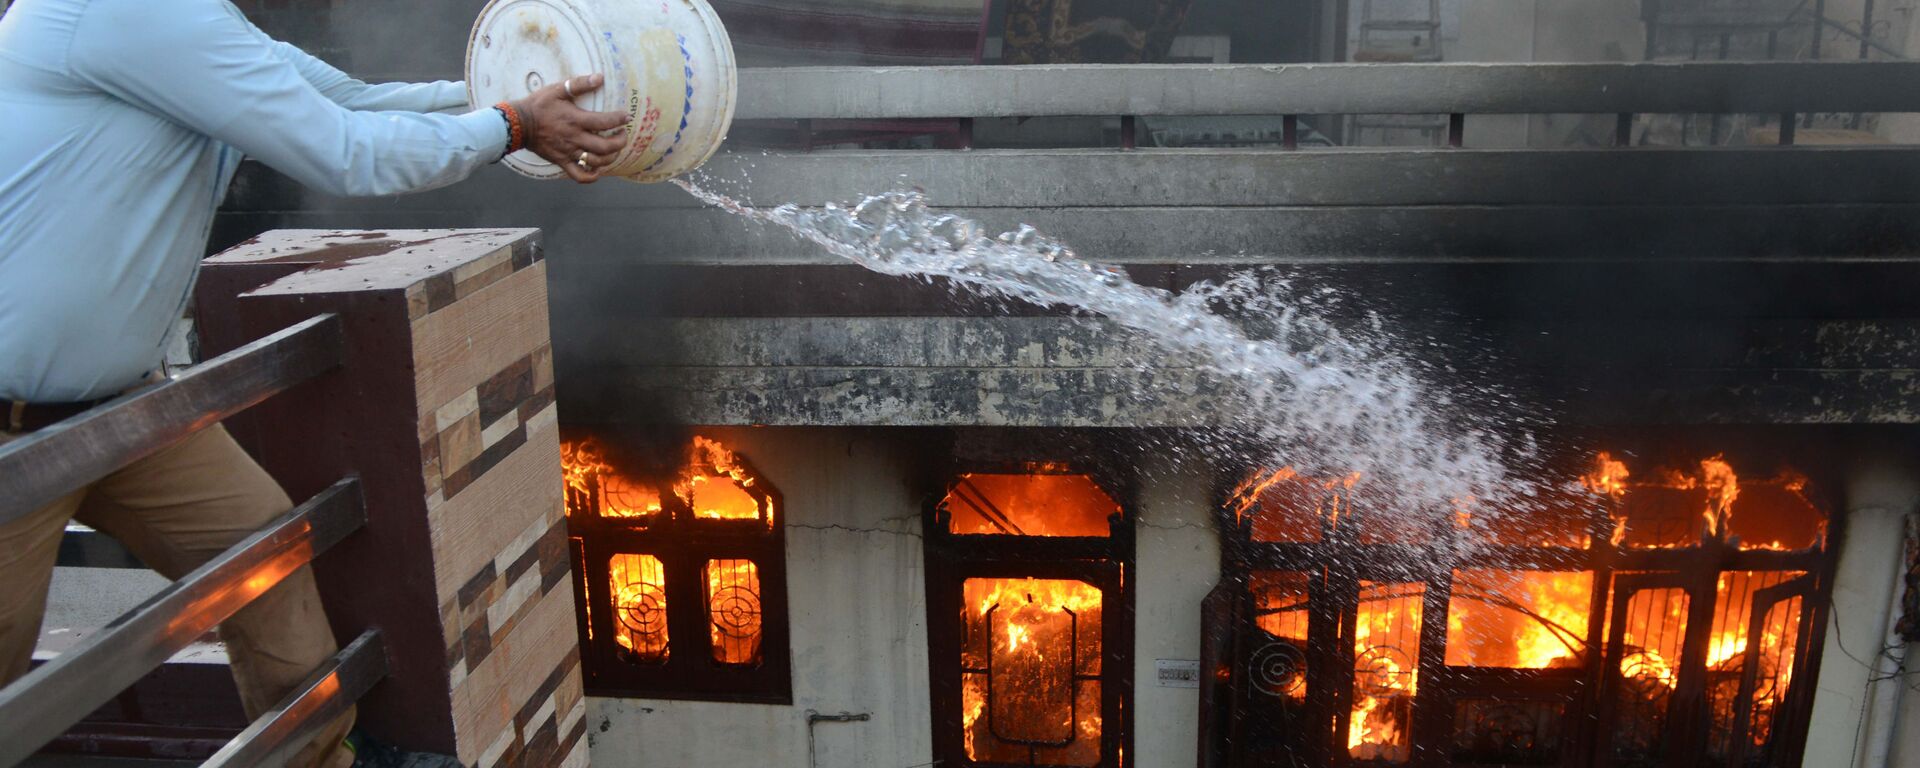 أحد السكان يحاول إخماد حريق في متجر كهربائي في أمريتسار، الهند في 20 مايو/ أيار 2018 - سبوتنيك عربي, 1920, 19.07.2019